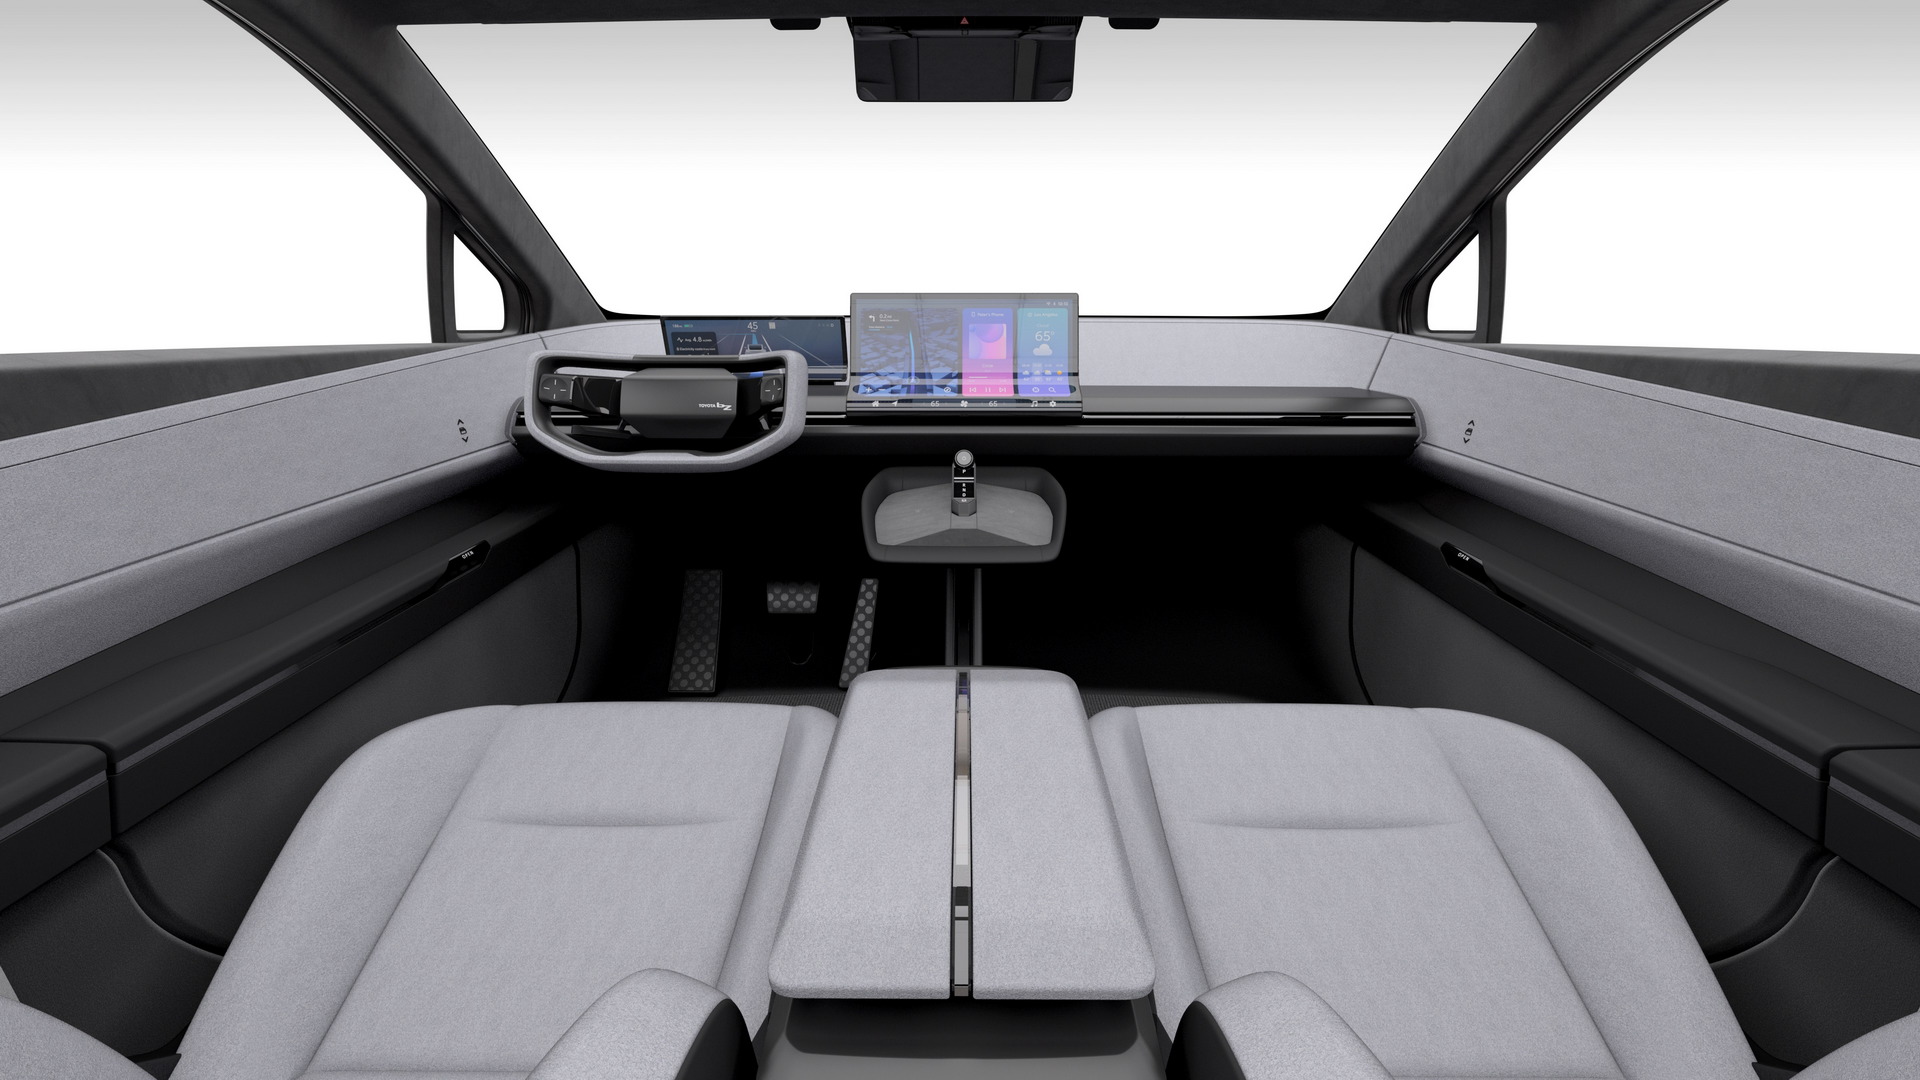 تدشين تويوتا bZ كومباكت SUV الكهربائية الجديدة كلياً بتصميم انسيابي وداخلية عصرية 22